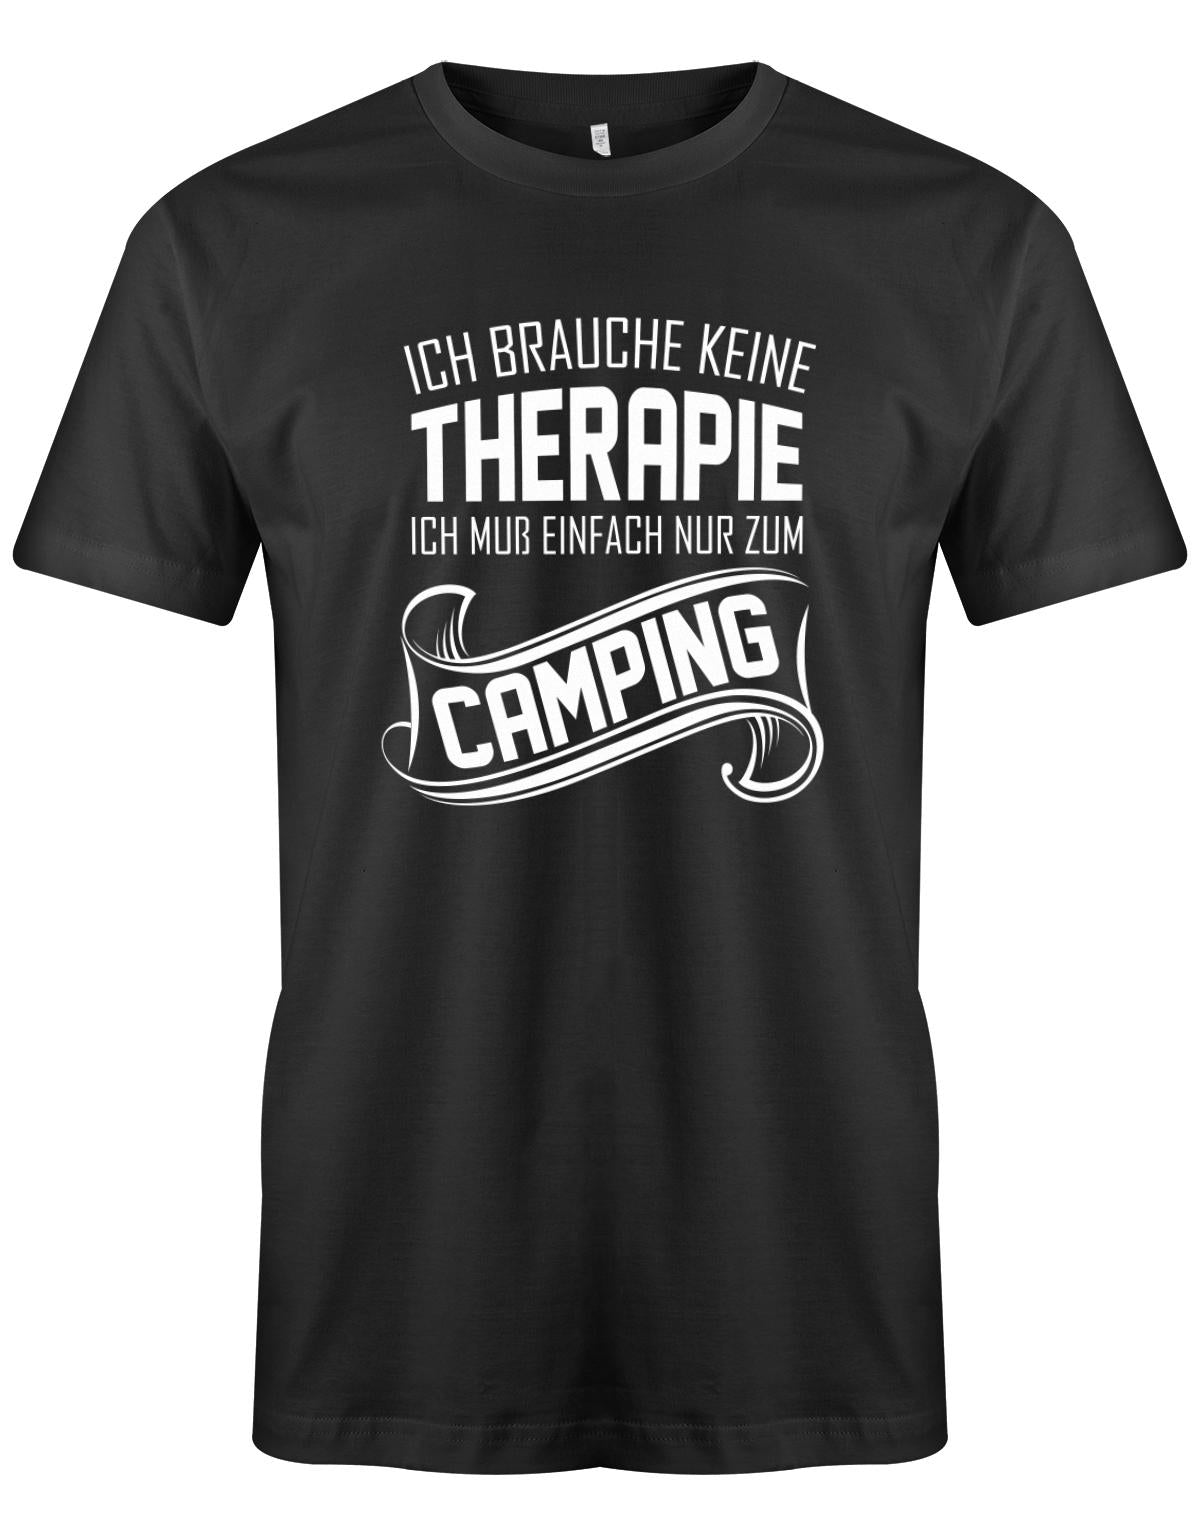 Ich-brauche-keine-Therapie-ich-muss-einfach-nur-zum-camping-Herren-Camper-Shirt-Schwarz